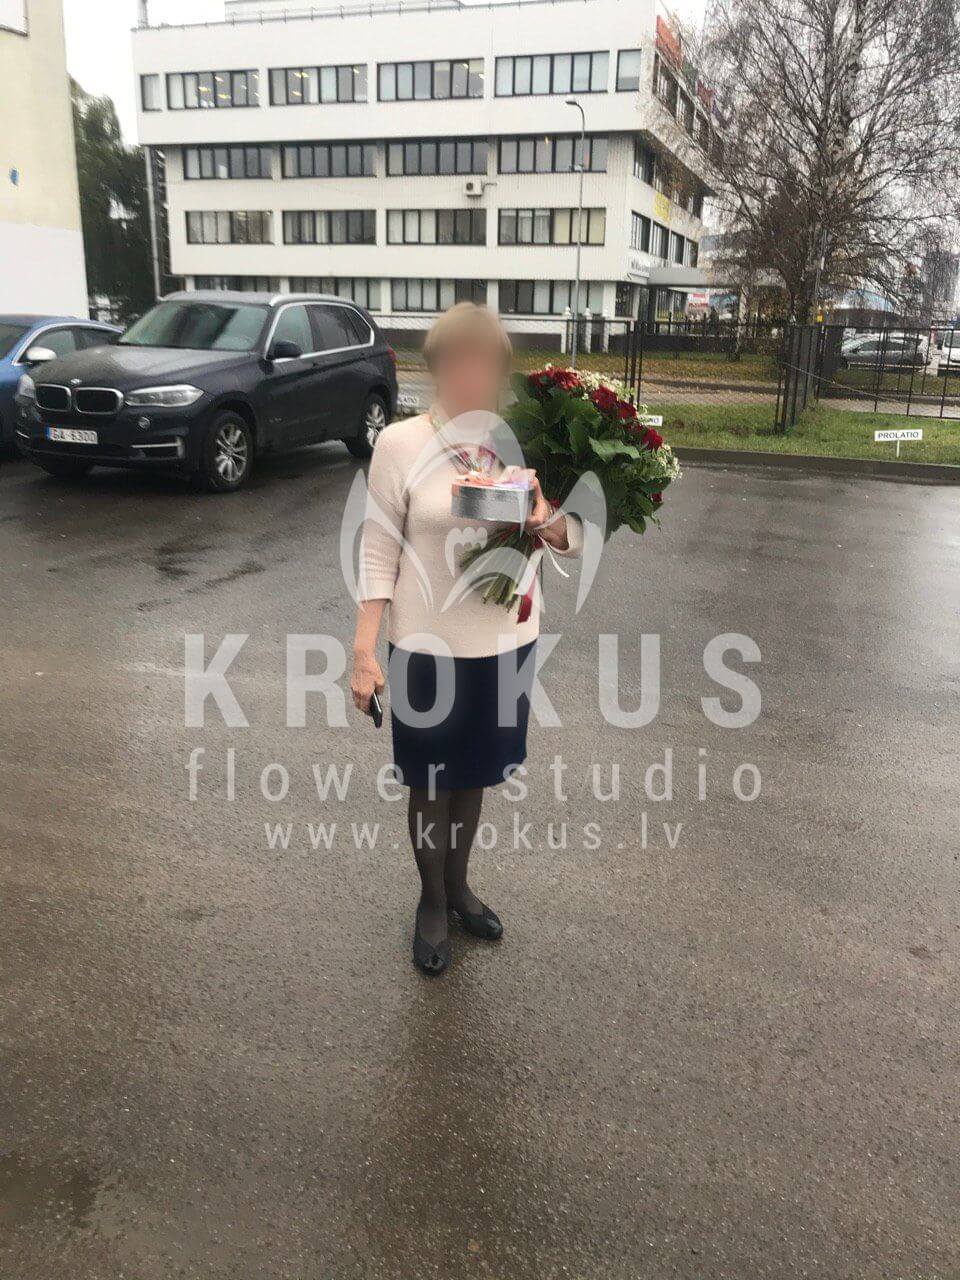 Доставка цветов в город Рига (фисташкатанацетум ромашкигиперикумкрасные розы)